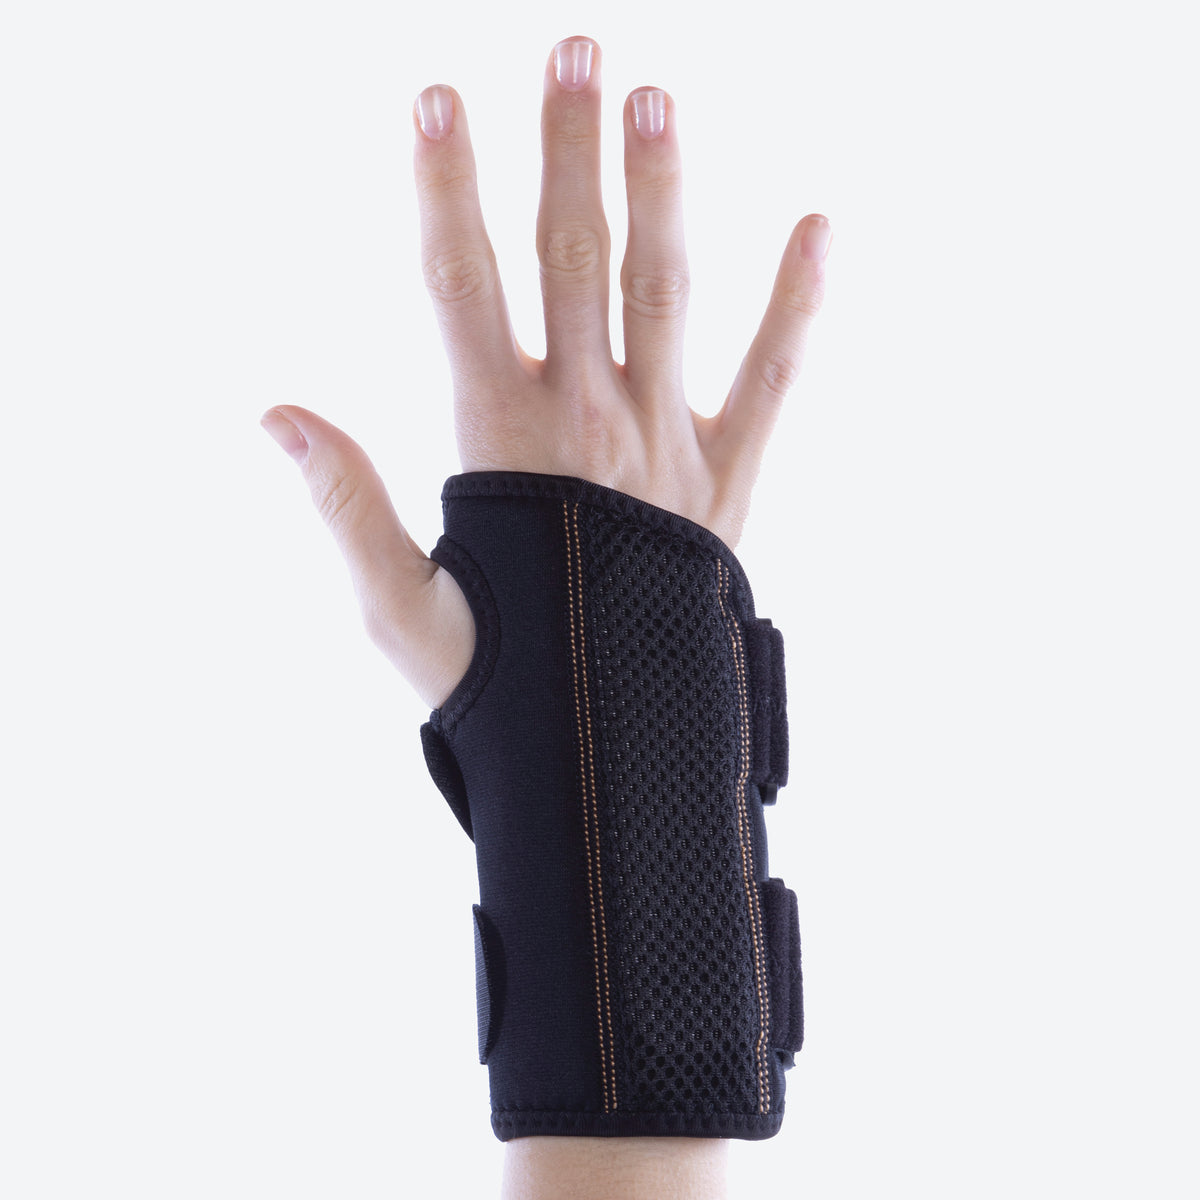 How To Wear A (Reversible) Wrist Brace 